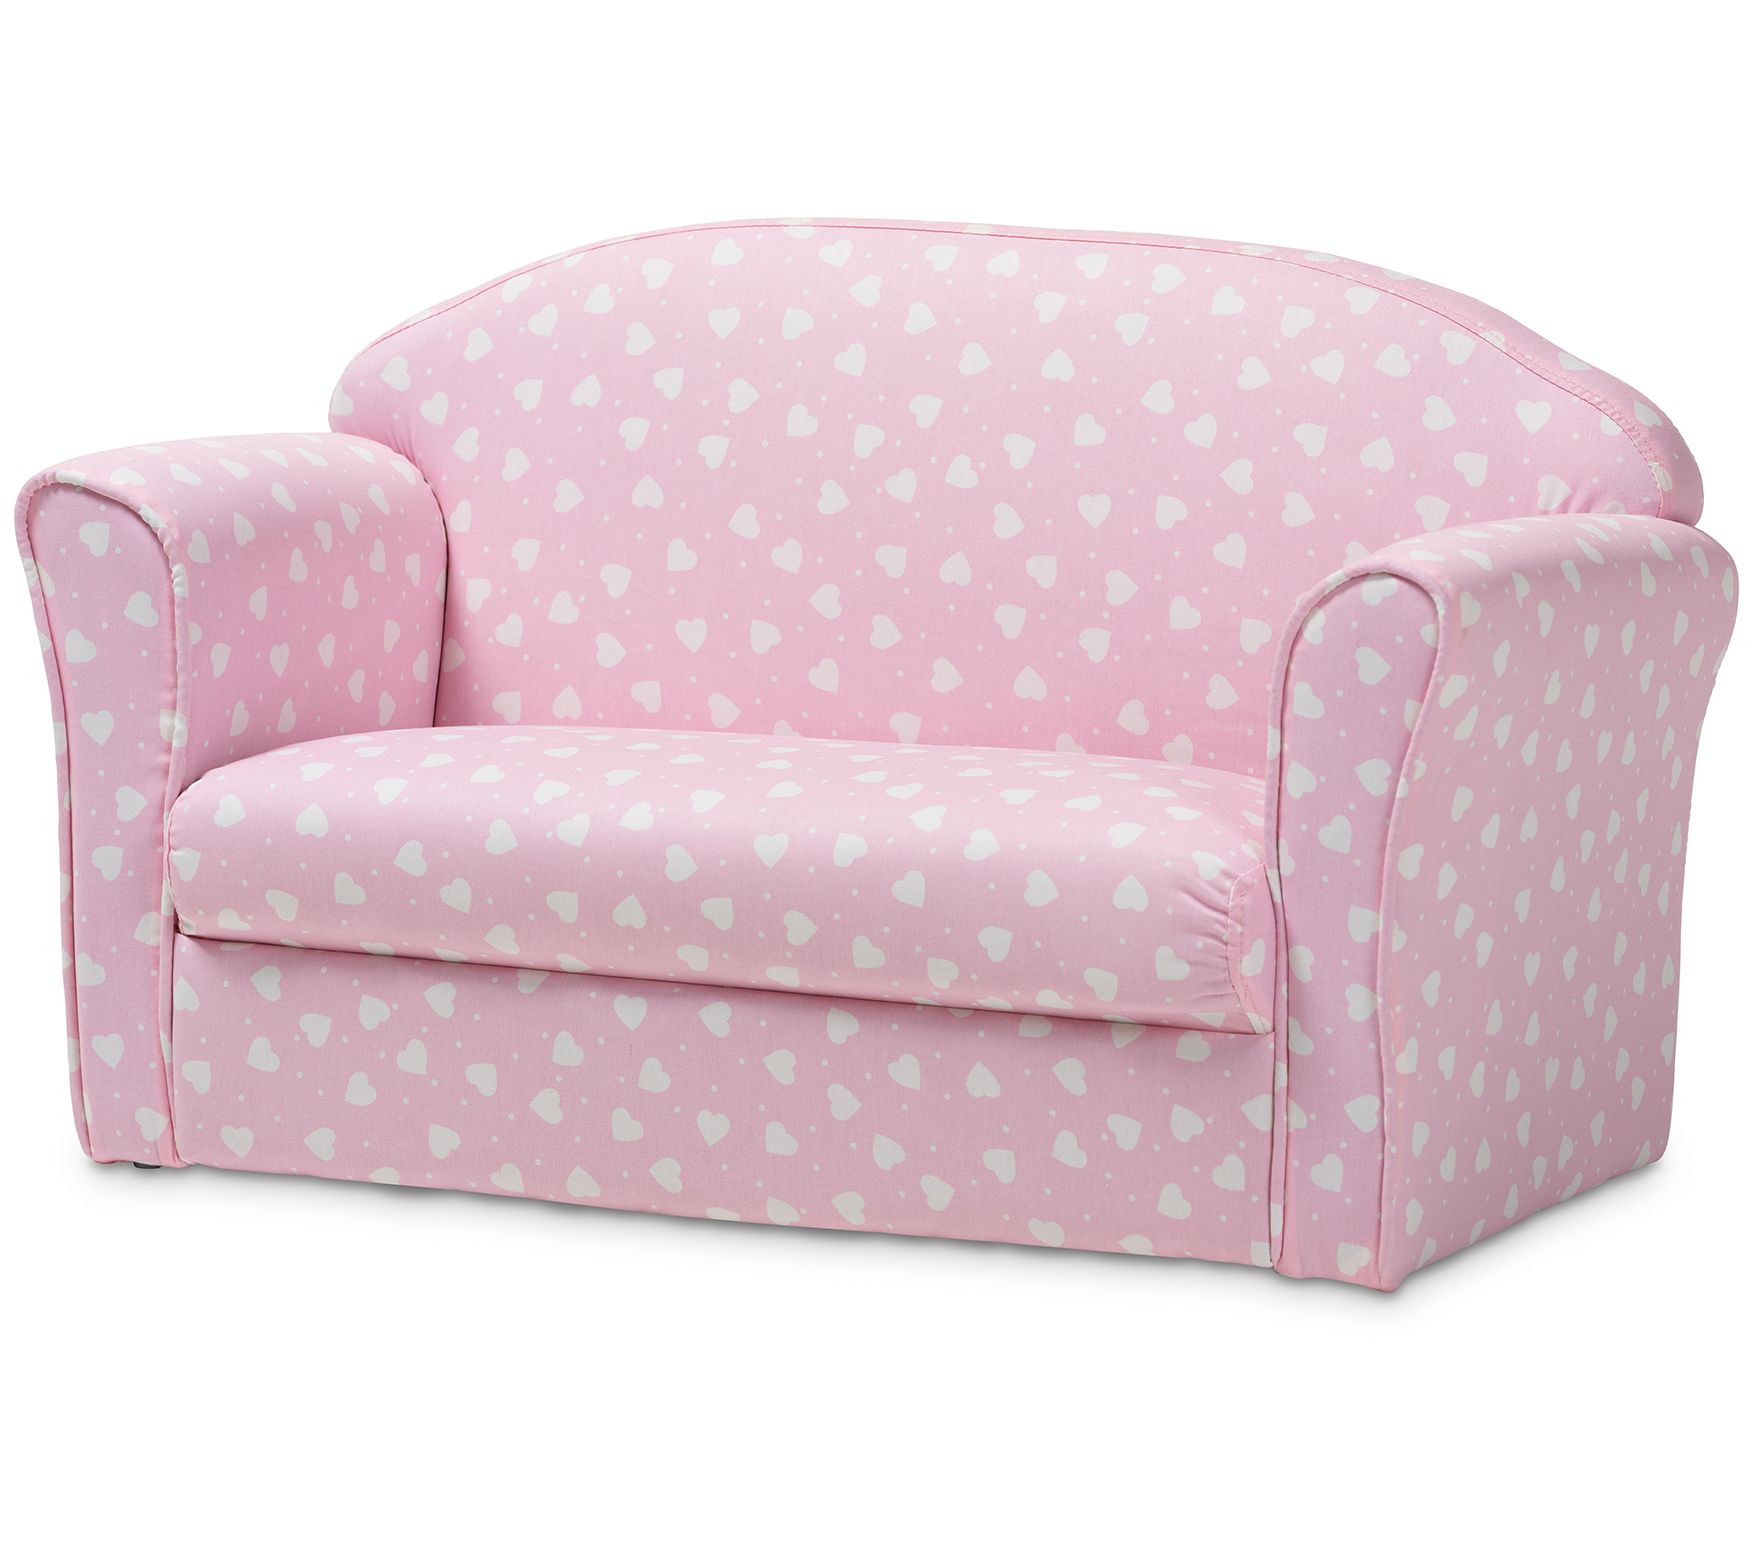 pink kids sofa